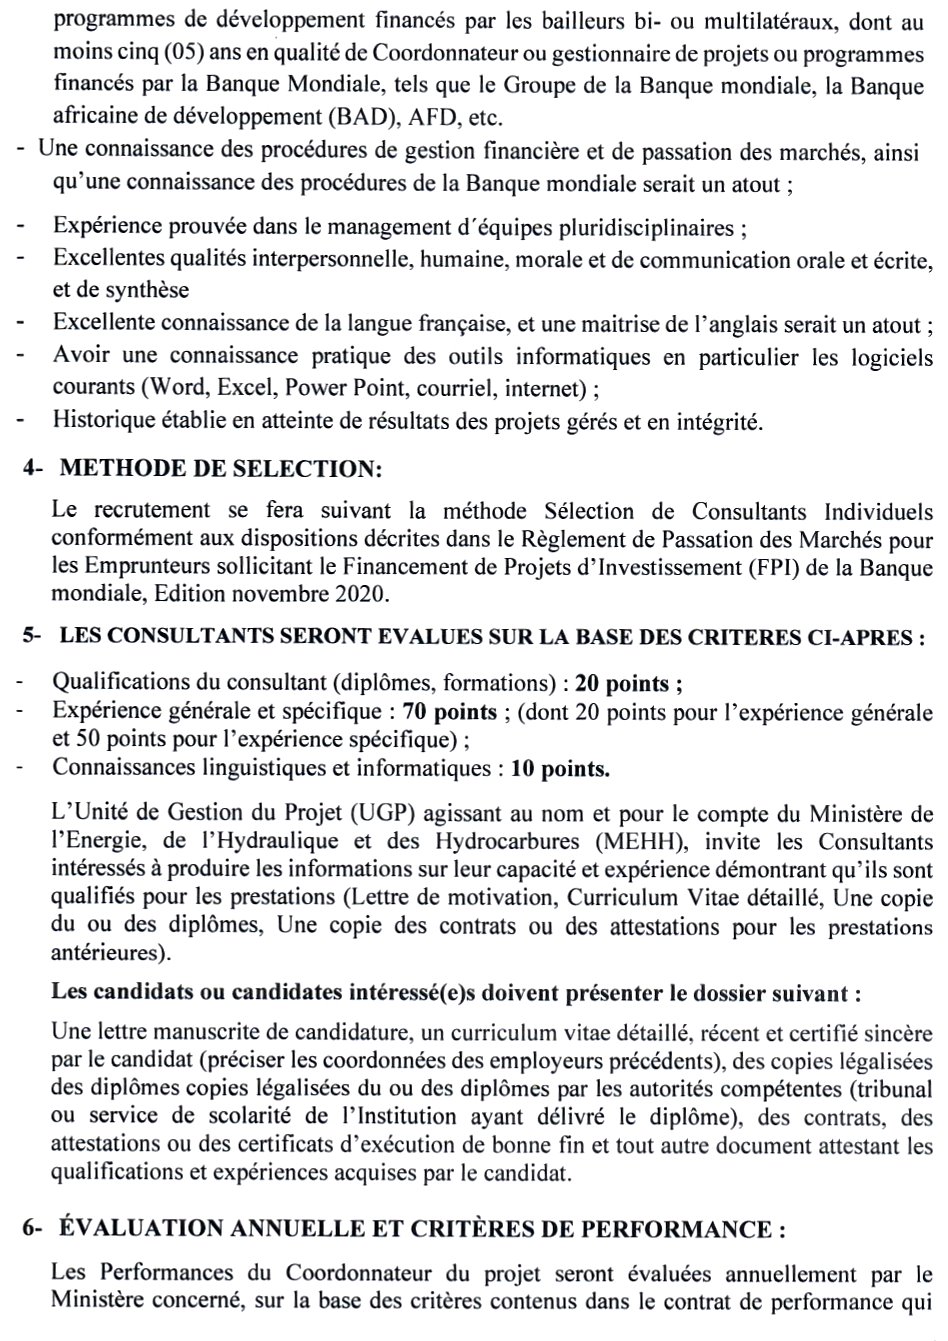 AVIS A MANIFESTATION D’INTERET POUR LE RECRUTEMENT D’UN COORDONNATEUR POUR LEPROJET URBAIN EAU DE GUINEE (PUEG) | Page 3